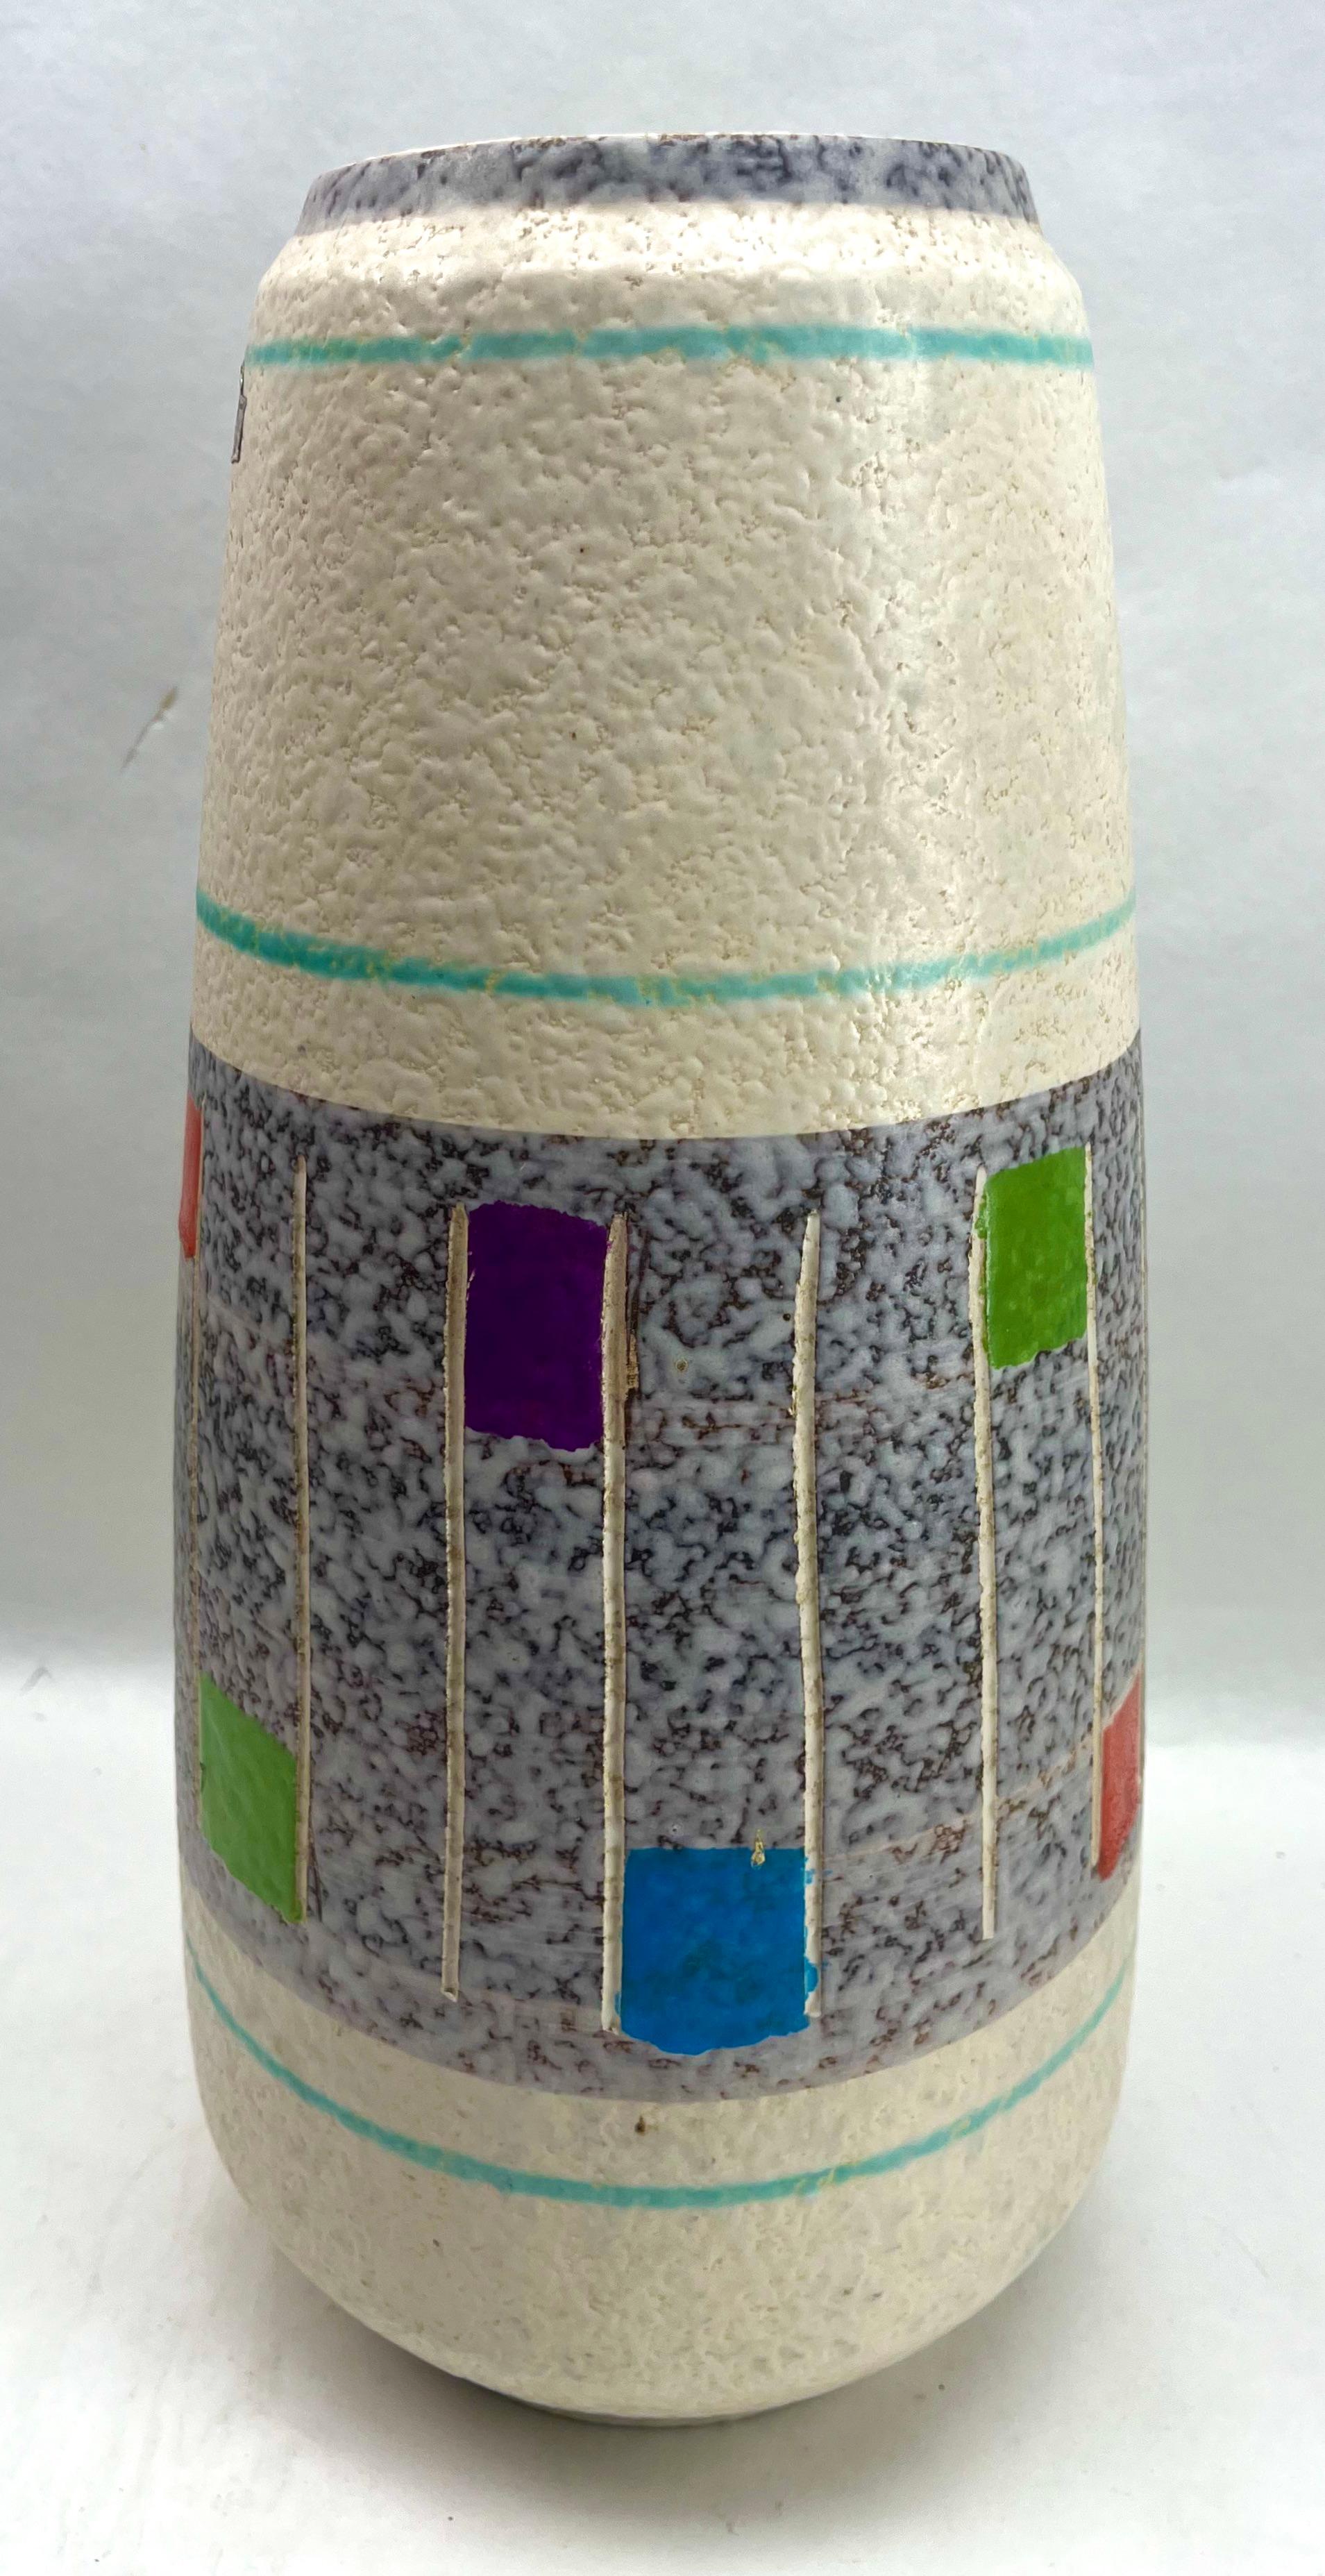 Vintage Floor Vessel Fat Lava Made by Bay mit Label W-Germany in, 1950er Jahre

Das Stück ist in ausgezeichnetem Zustand und eine echte Schönheit!
Behält ein werkseitiges Label. 
Ein wahrer Schatz für den Keramiksammler. 

Die Herstellung dieser